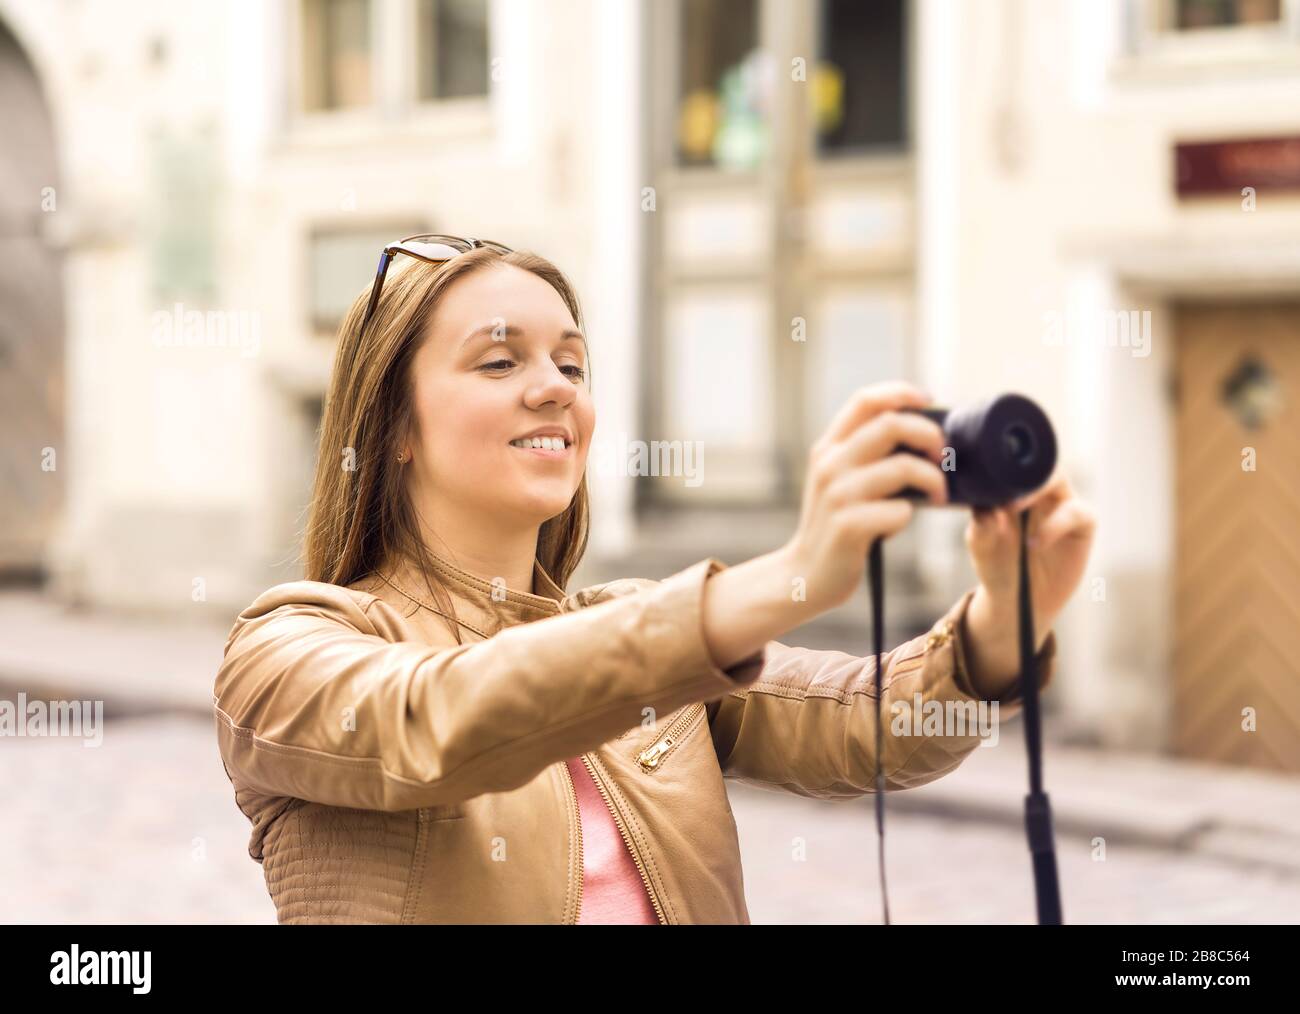 Lächelnde Frau fotografiert mit Digitalkamera auf der Straße in der Altstadt. Urlaubsbilder im Urlaub. Konzept für Reisefotografie. Stockfoto